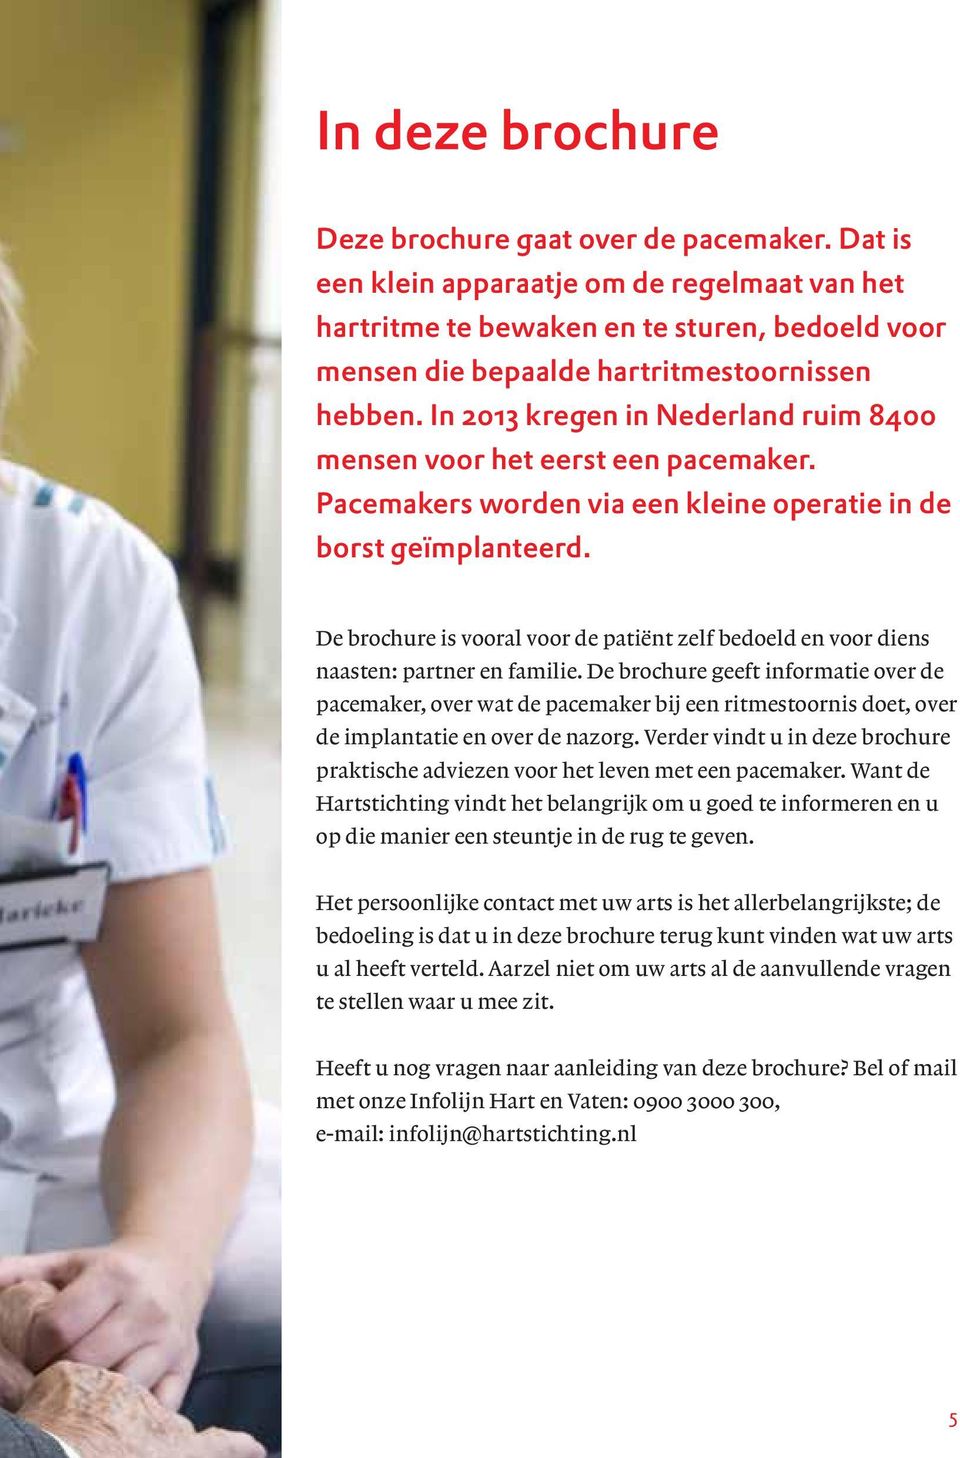 In 2013 kregen in Nederland ruim 8400 mensen voor het eerst een pacemaker. Pacemakers worden via een kleine operatie in de borst geïmplanteerd.